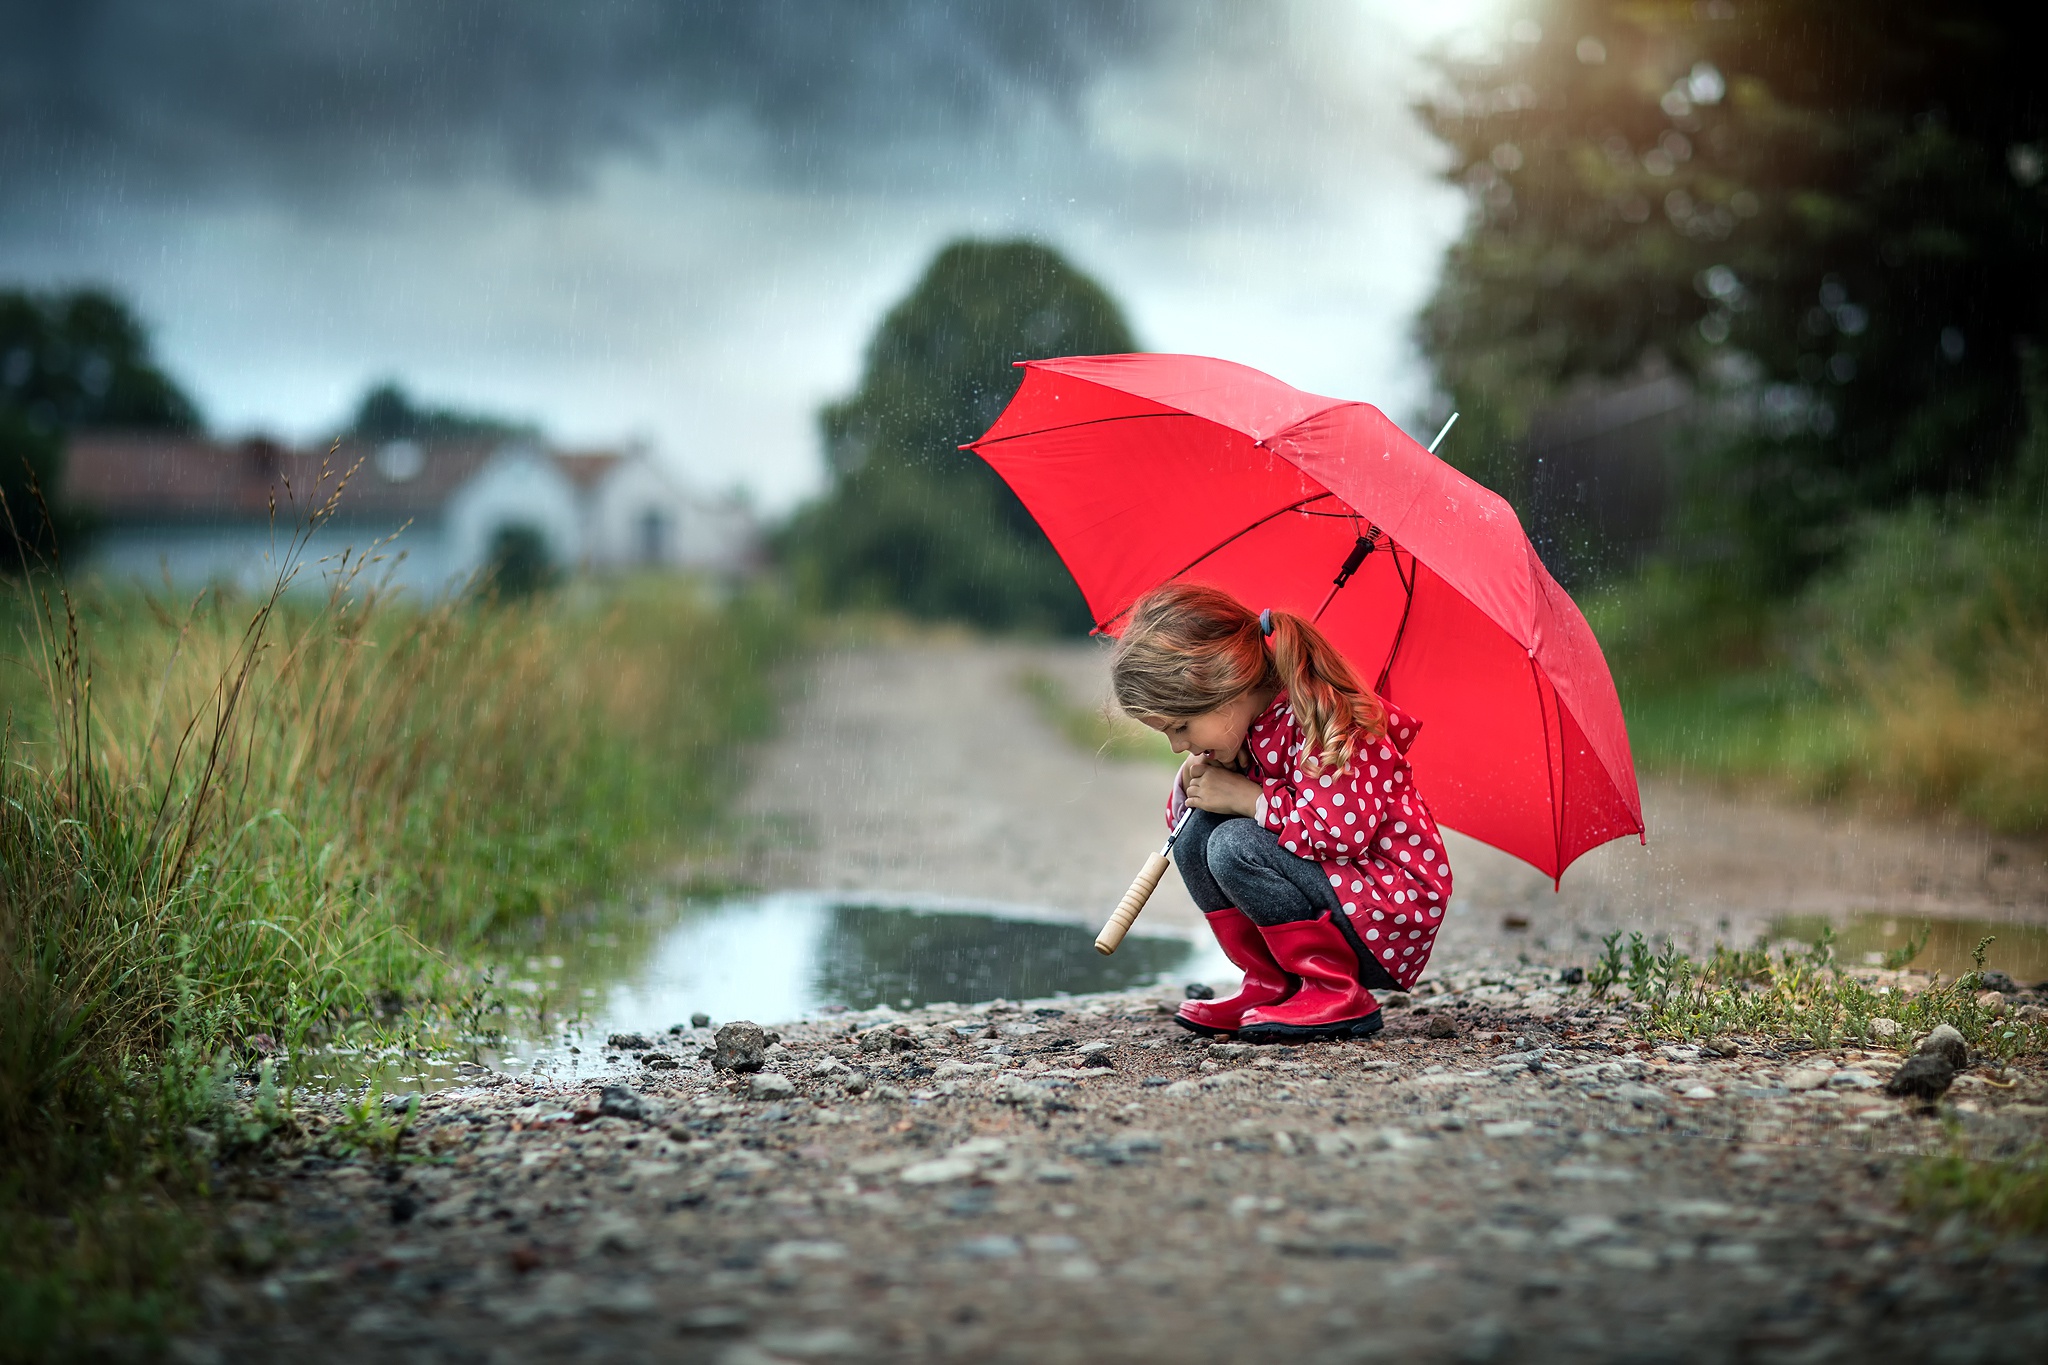 Тема дождливая погода. Девочка с зонтиком. Под зонтиком. Природа дождь. Девочка под зонтиком.